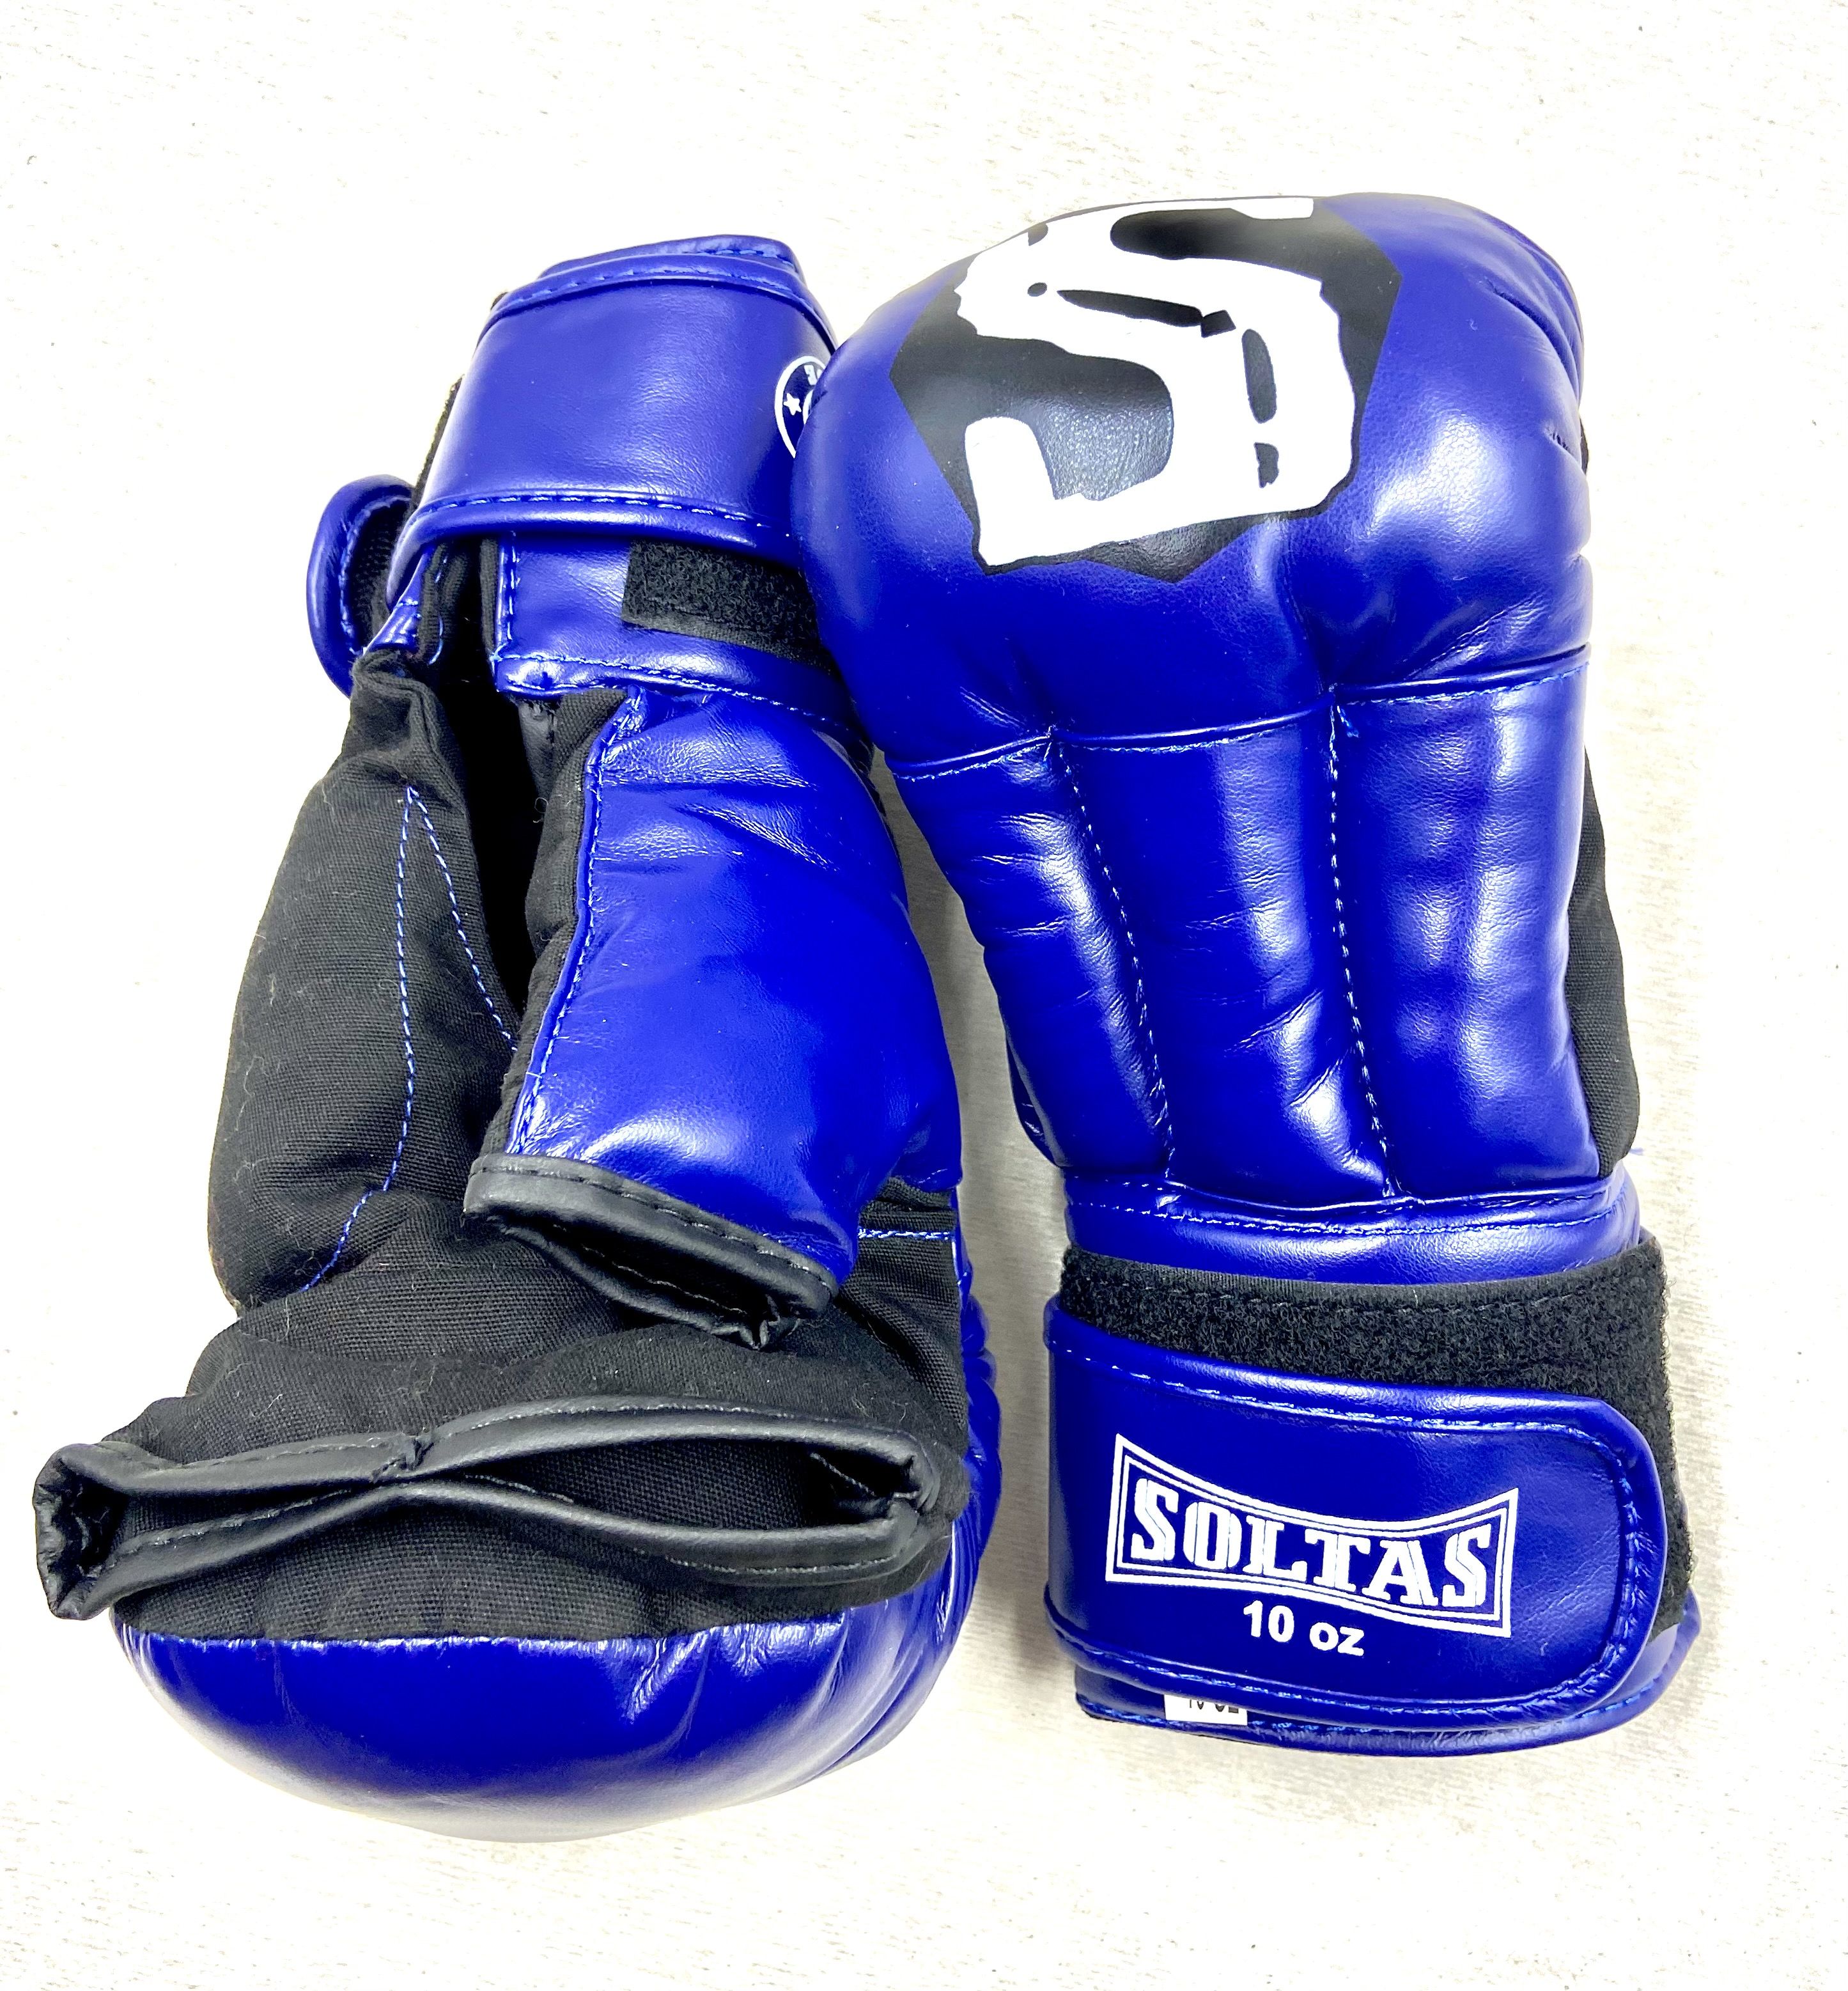 Перчатки для рукопашного боя 10 унций. Revel перчатки рукопашные. Перчатки для рукопашного боя Soltas, цвет синий, размер 6 oz (унций).